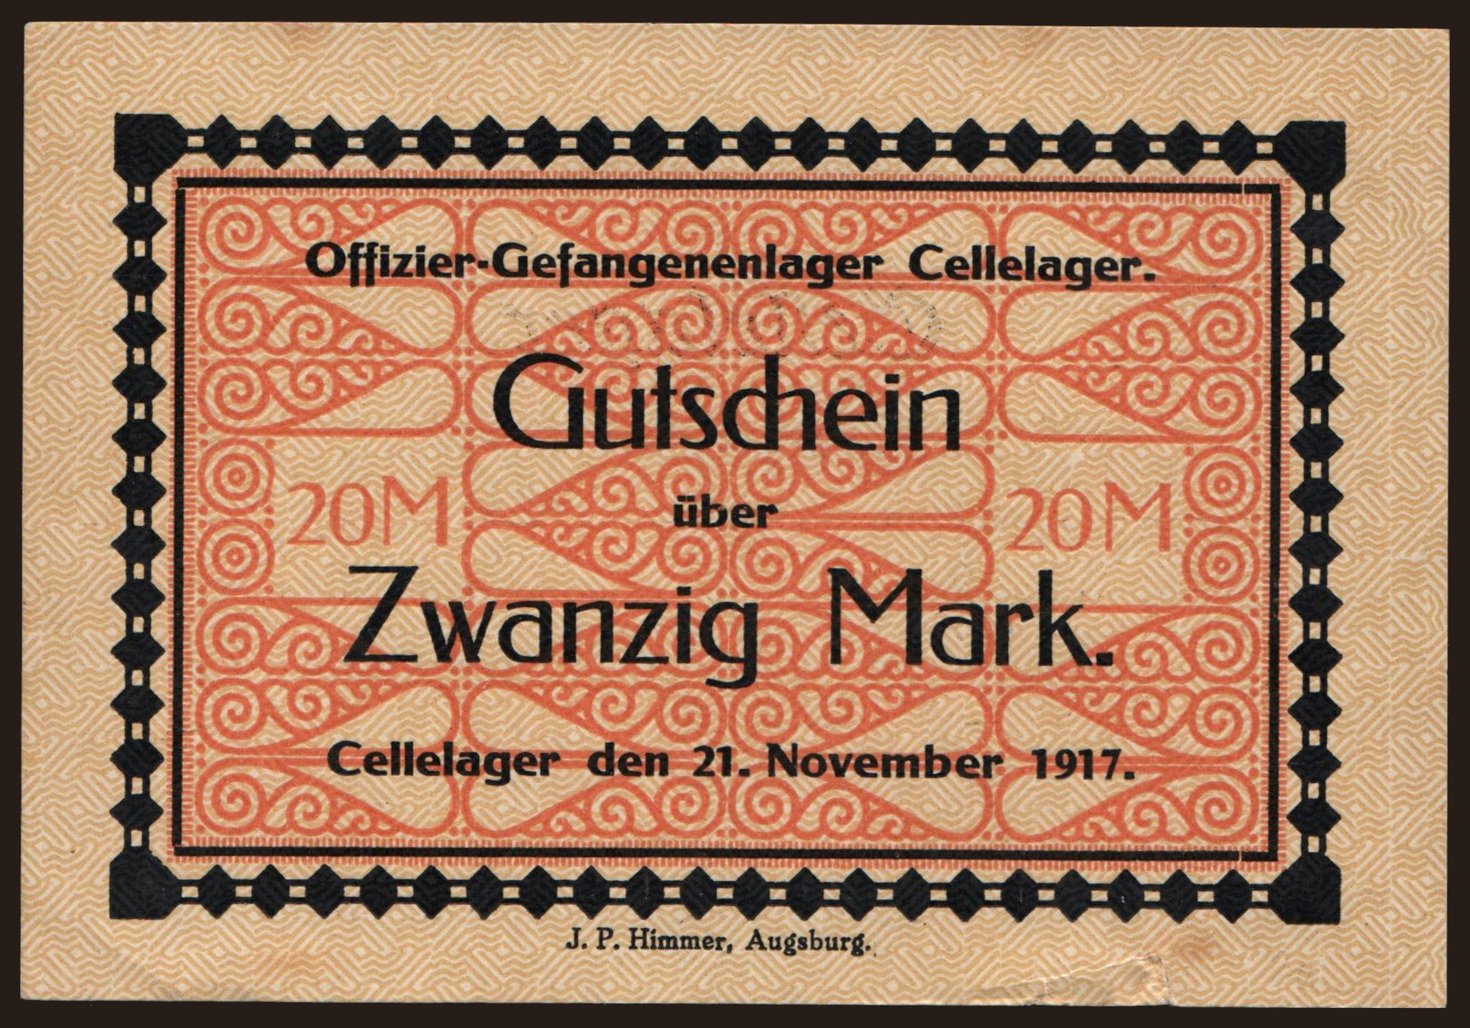 Cellelager, 20 Mark, 1917